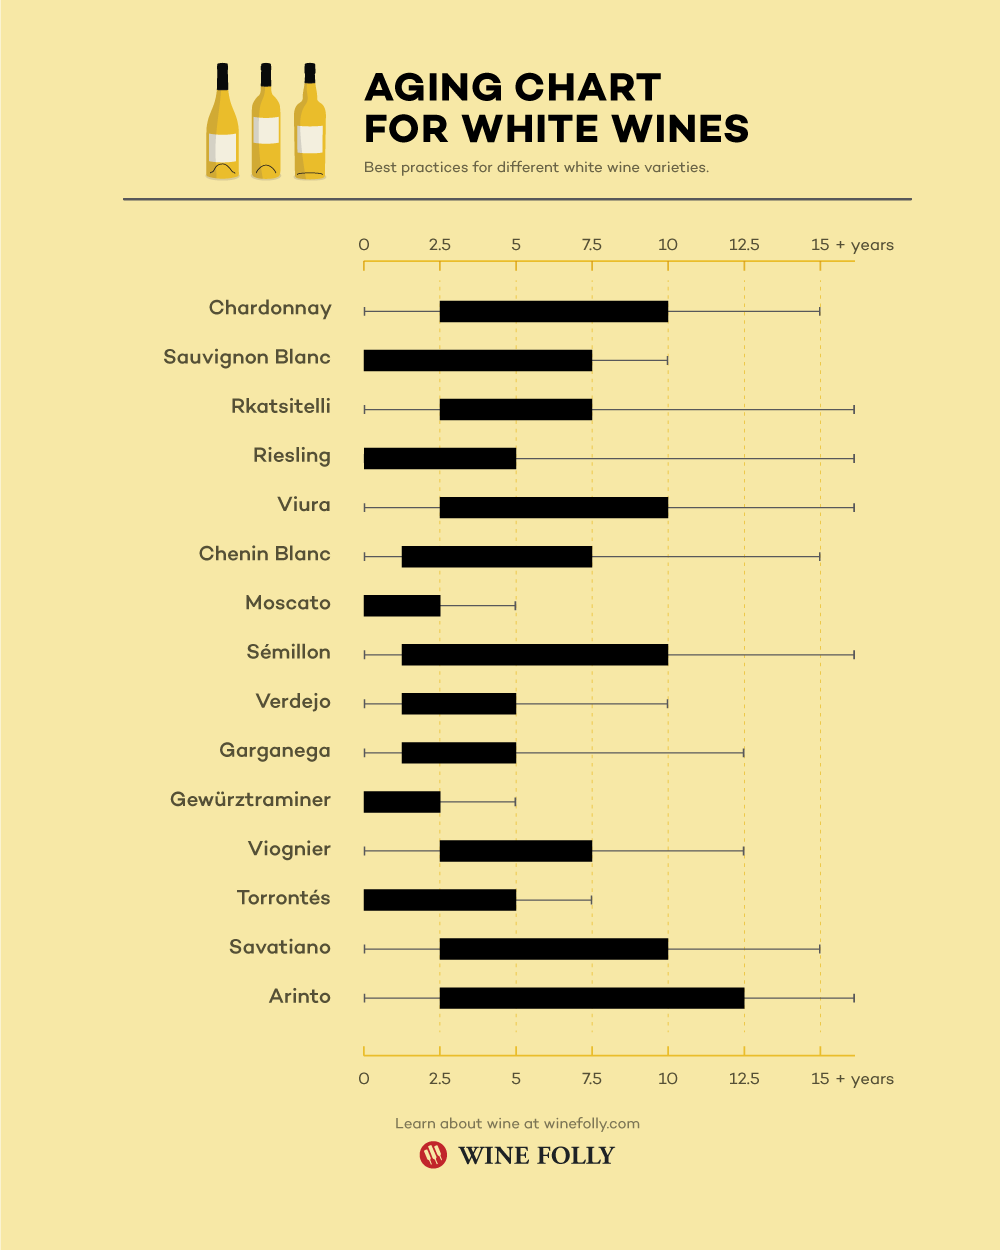 व्हाइट वाइन के लिए एजिंग चार्ट - शराब फली द्वारा इन्फोग्राफिक